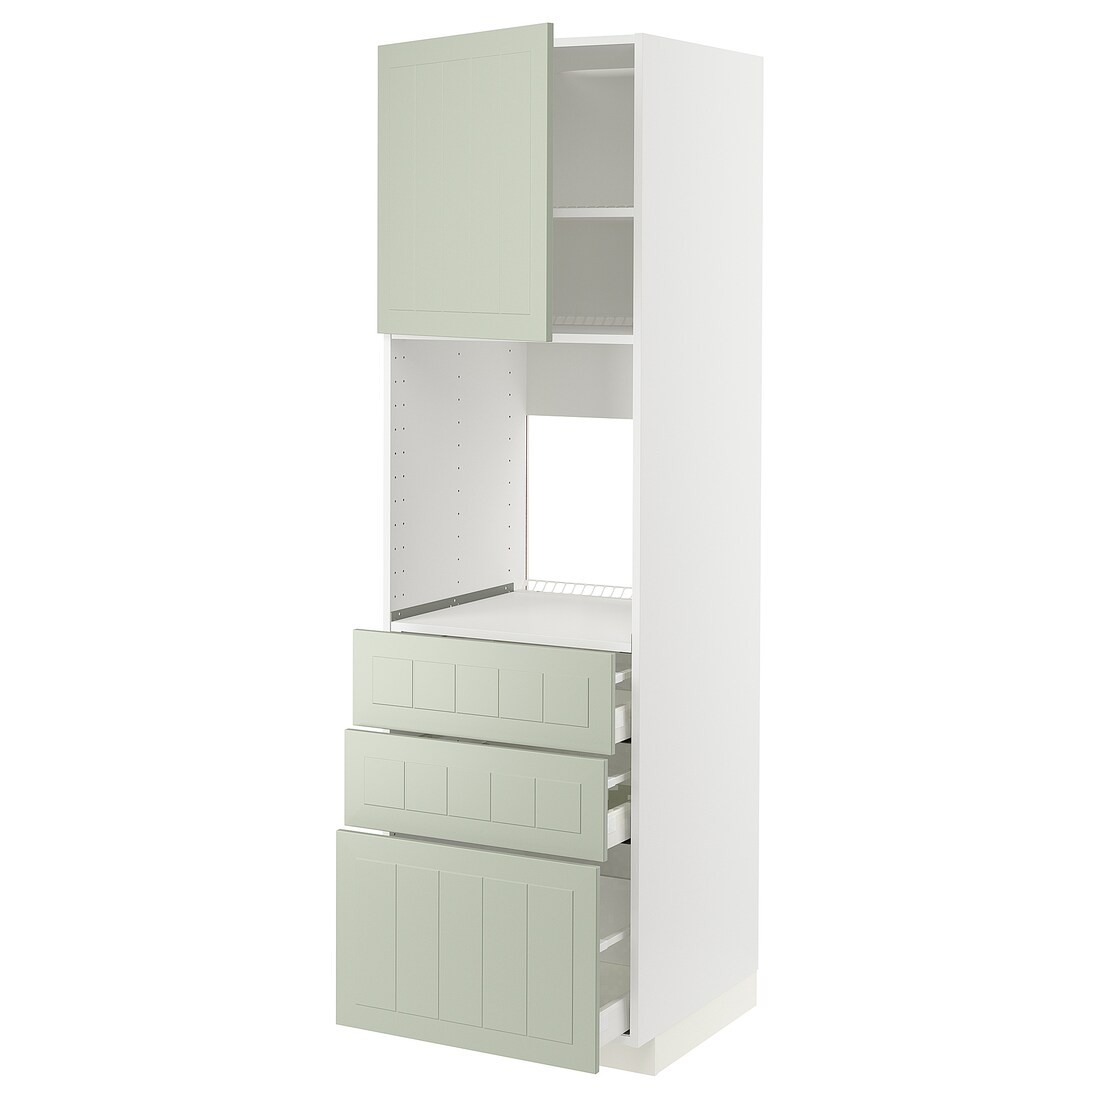 METOD МЕТОД / MAXIMERA МАКСИМЕРА Высокий шкаф для духовки, белый / Stensund светло-зеленый, 60x60x200 см